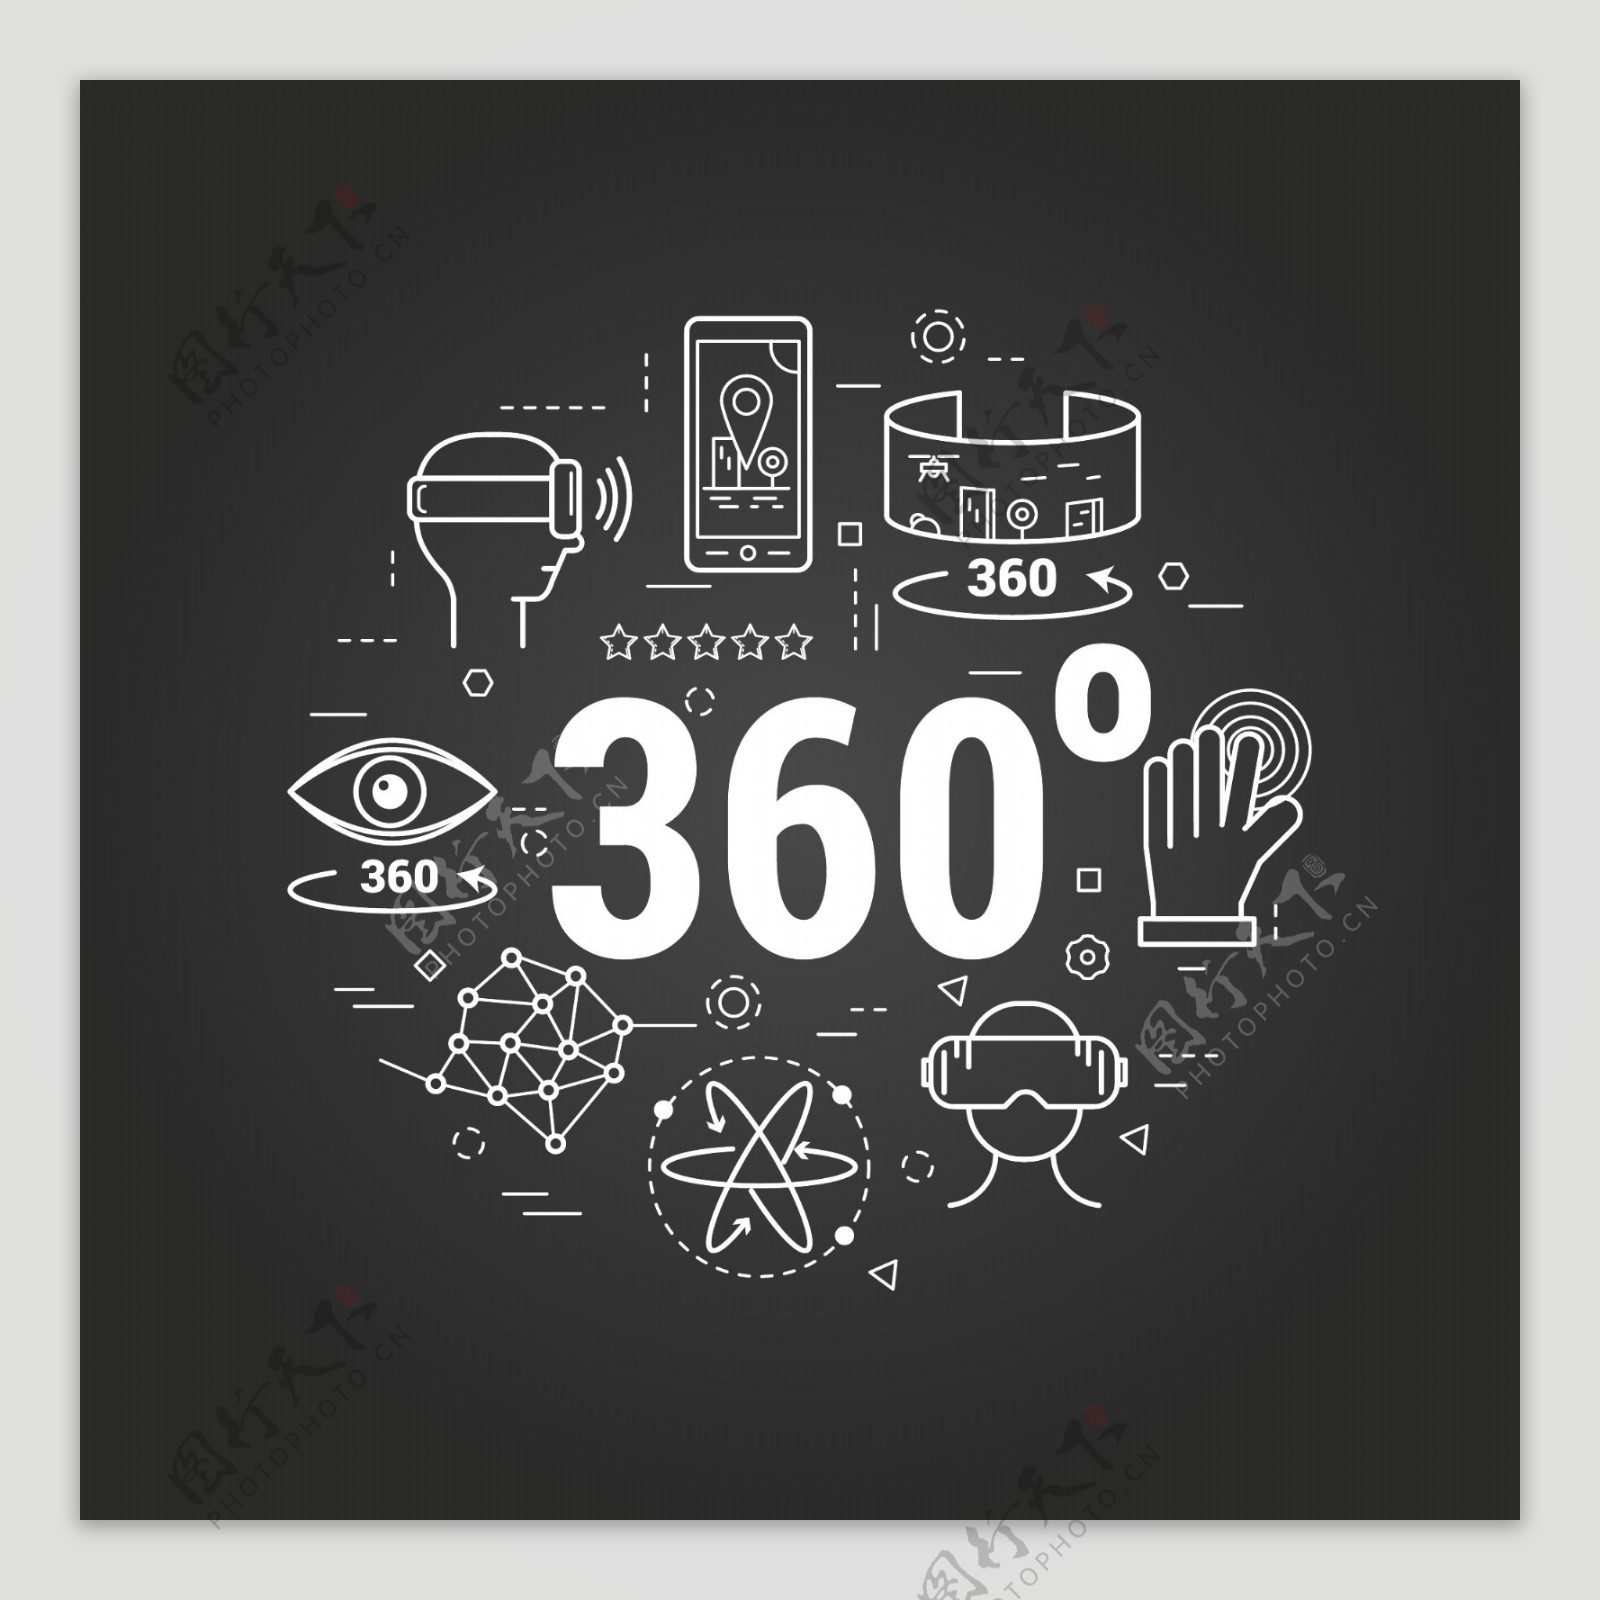 360世界卡通高清矢量素材